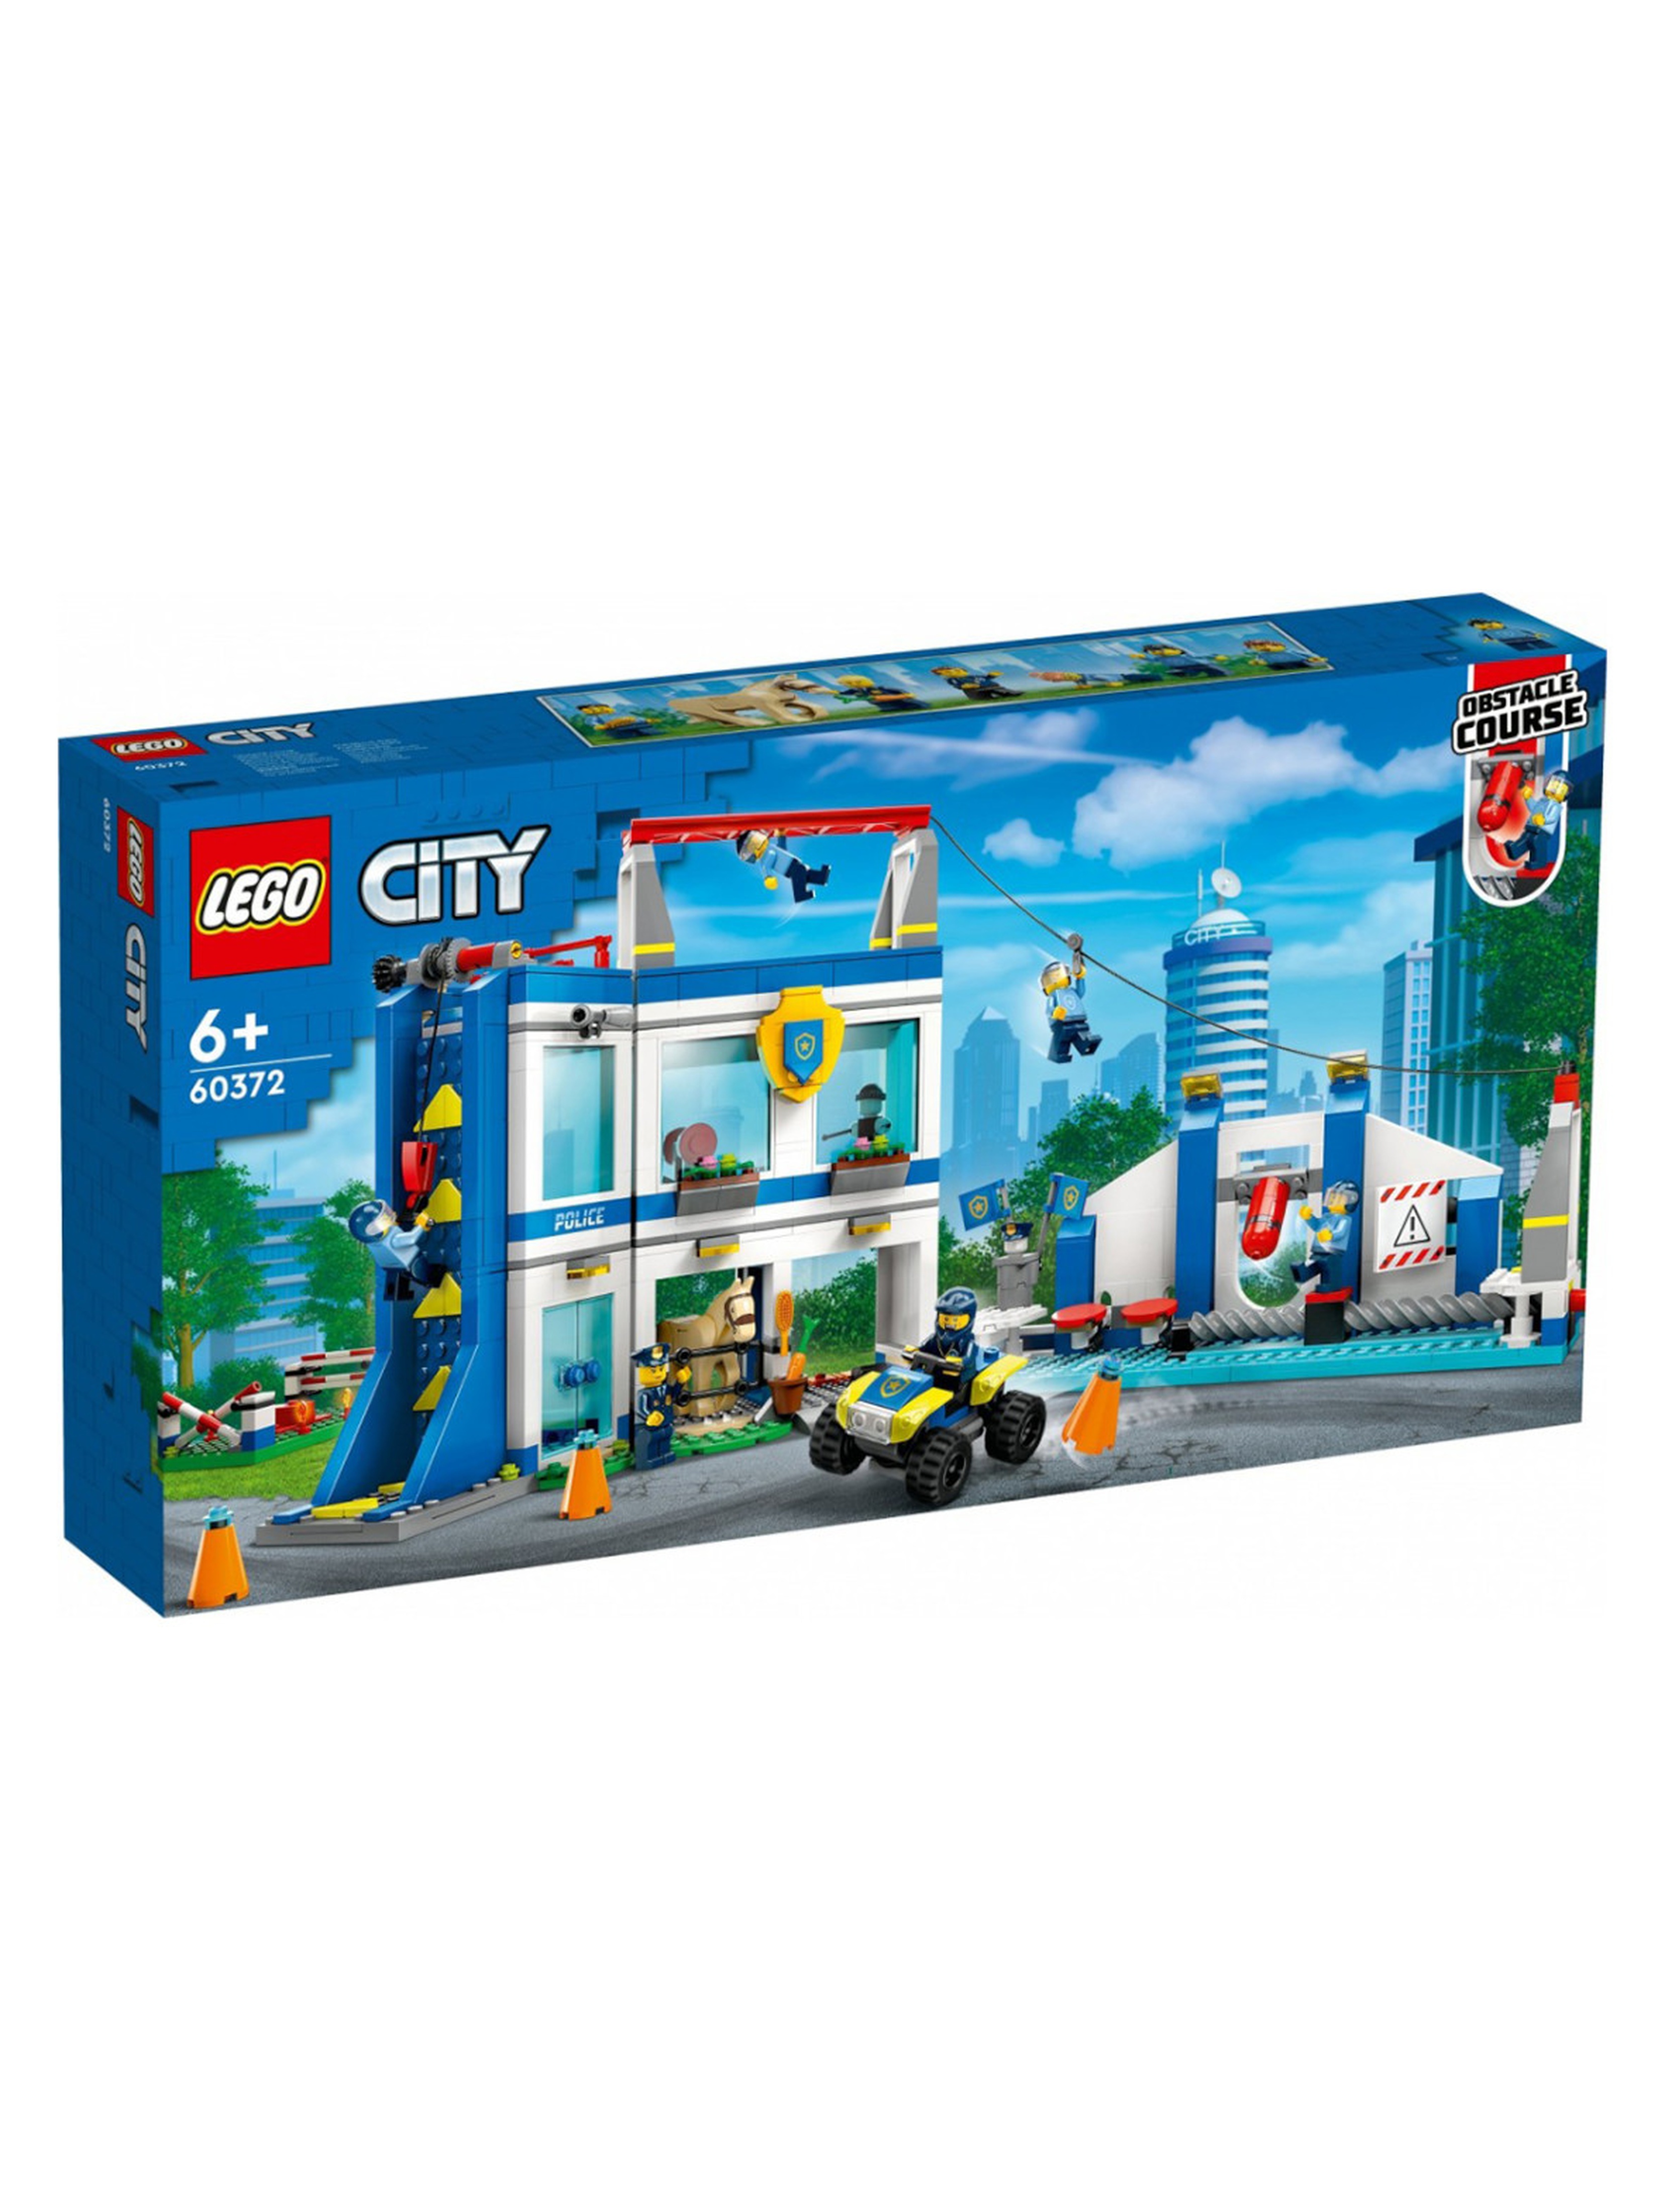 Klocki LEGO City 60372 Akademia policyjna - 823 elementy, wiek 6 +